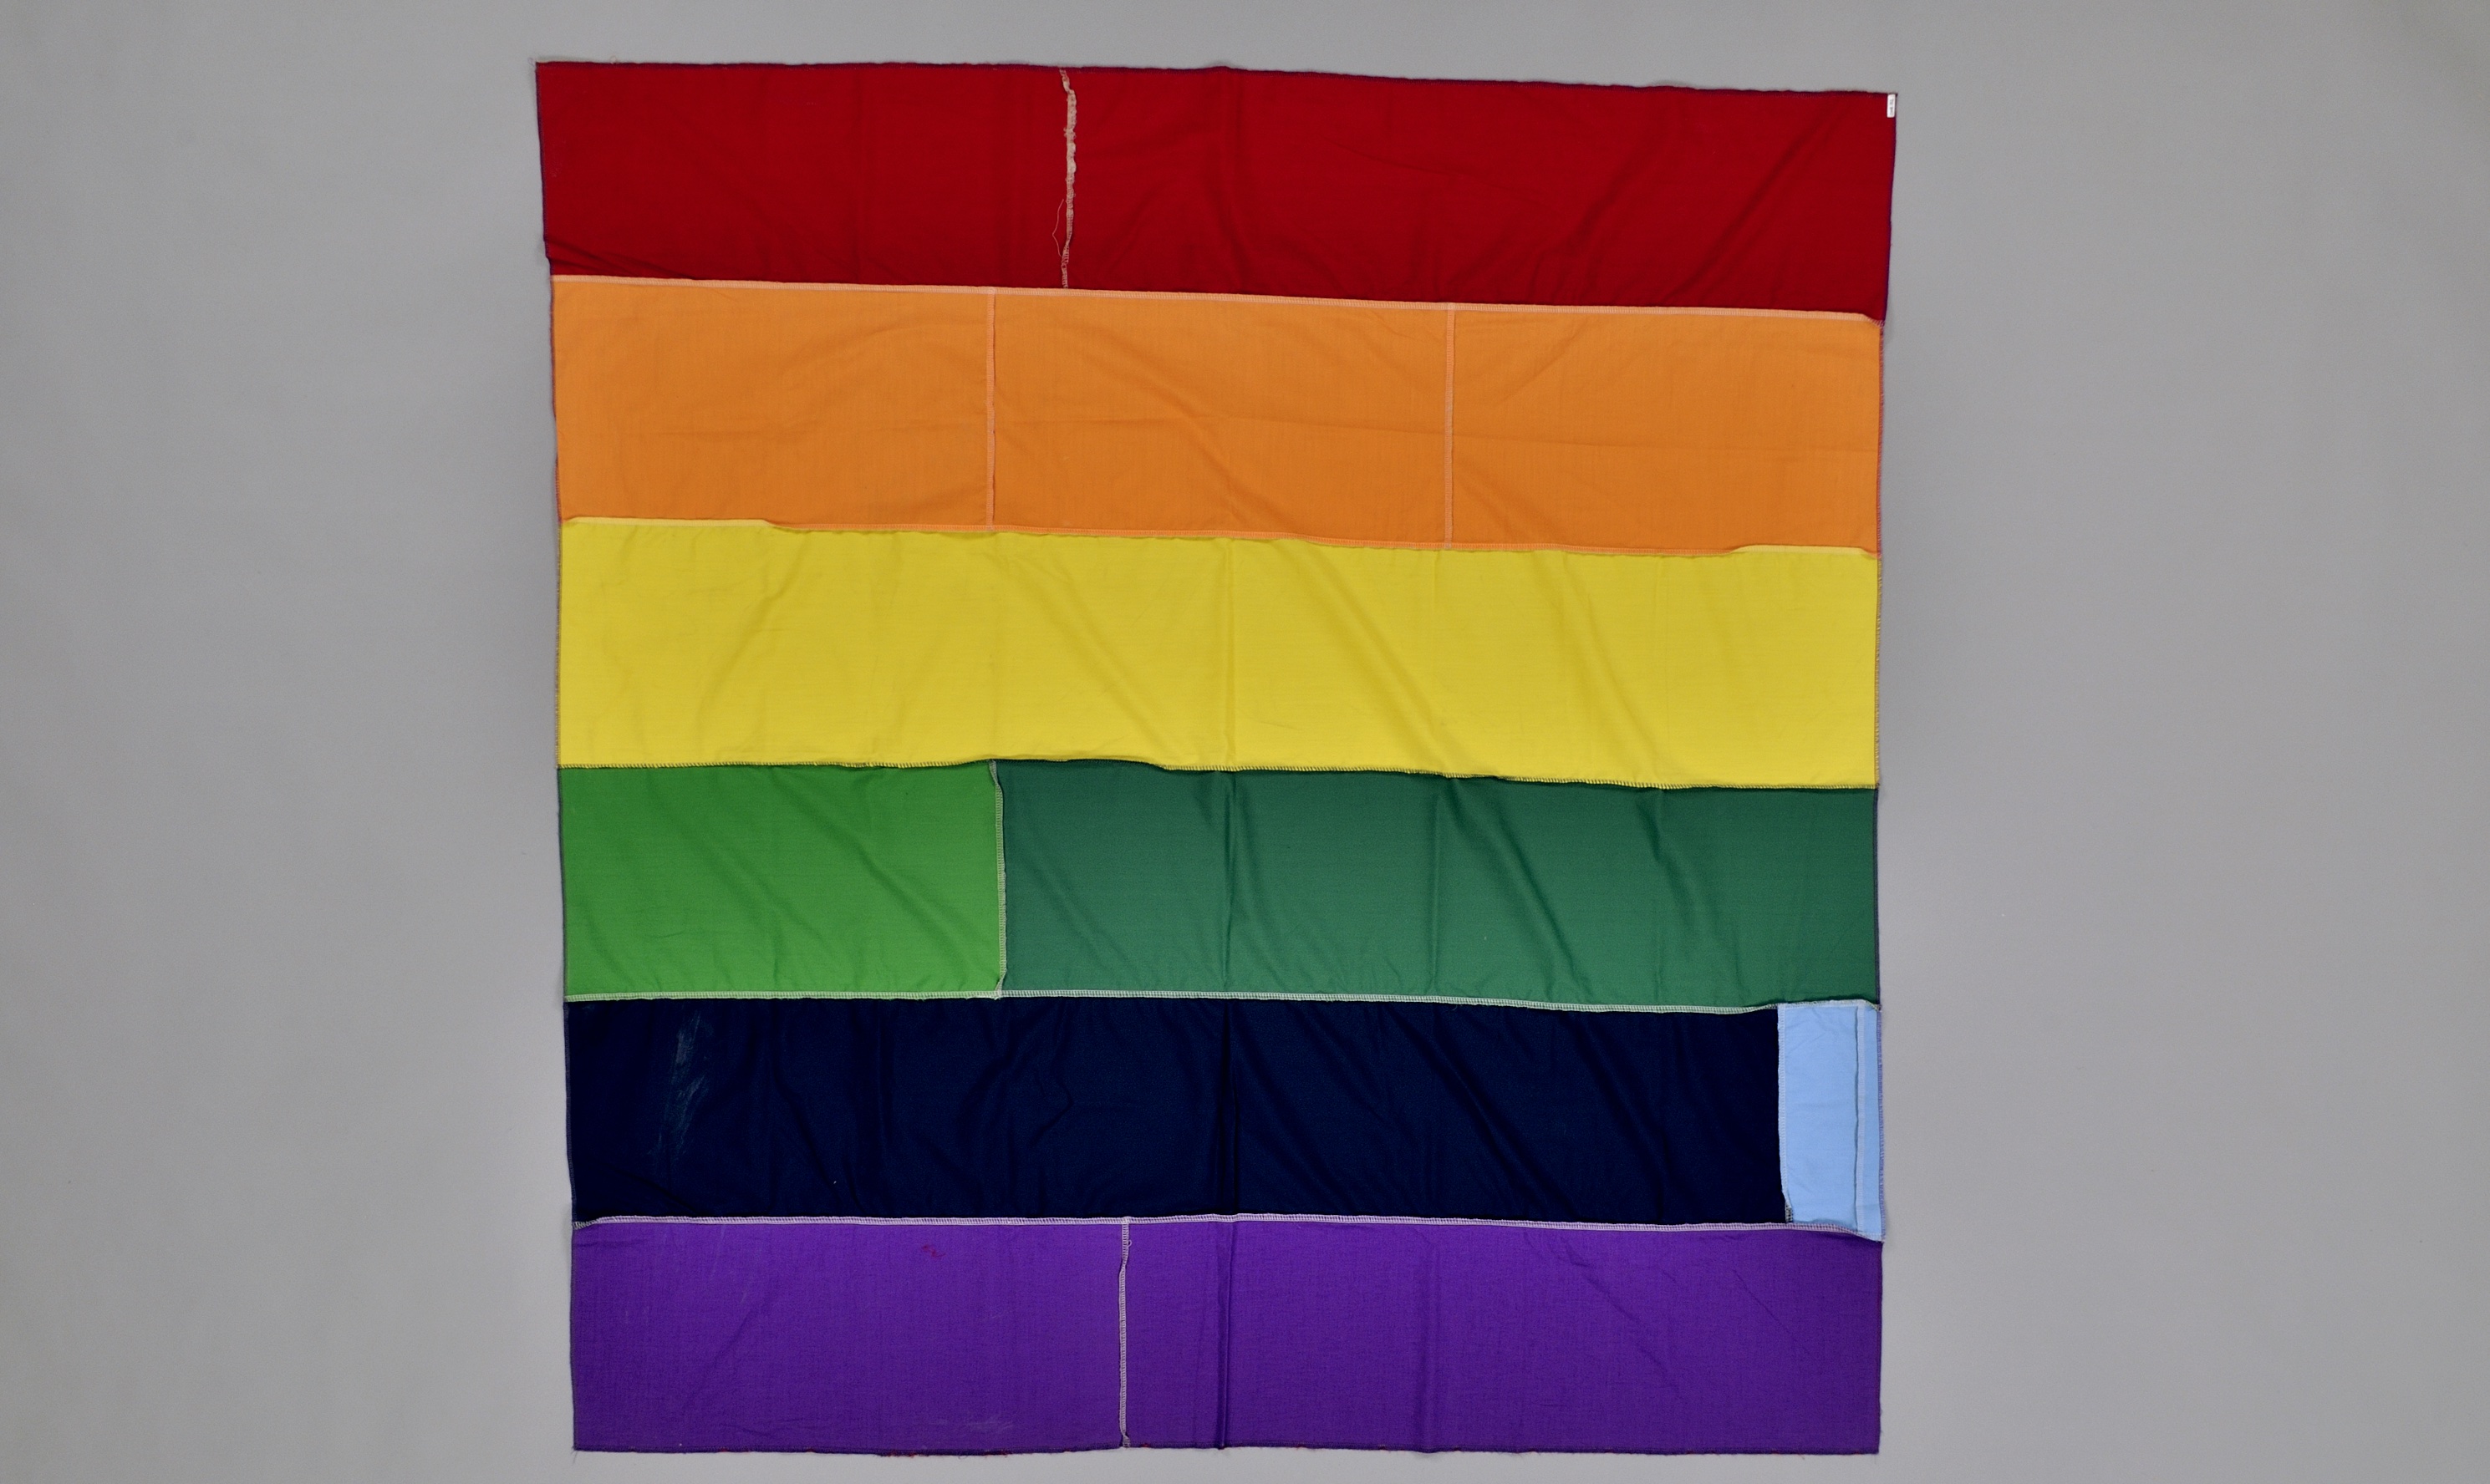 Section d’une bannière réalisée à partir de matériaux de différentes couleurs.//Section of a banner made from different-coloured materials